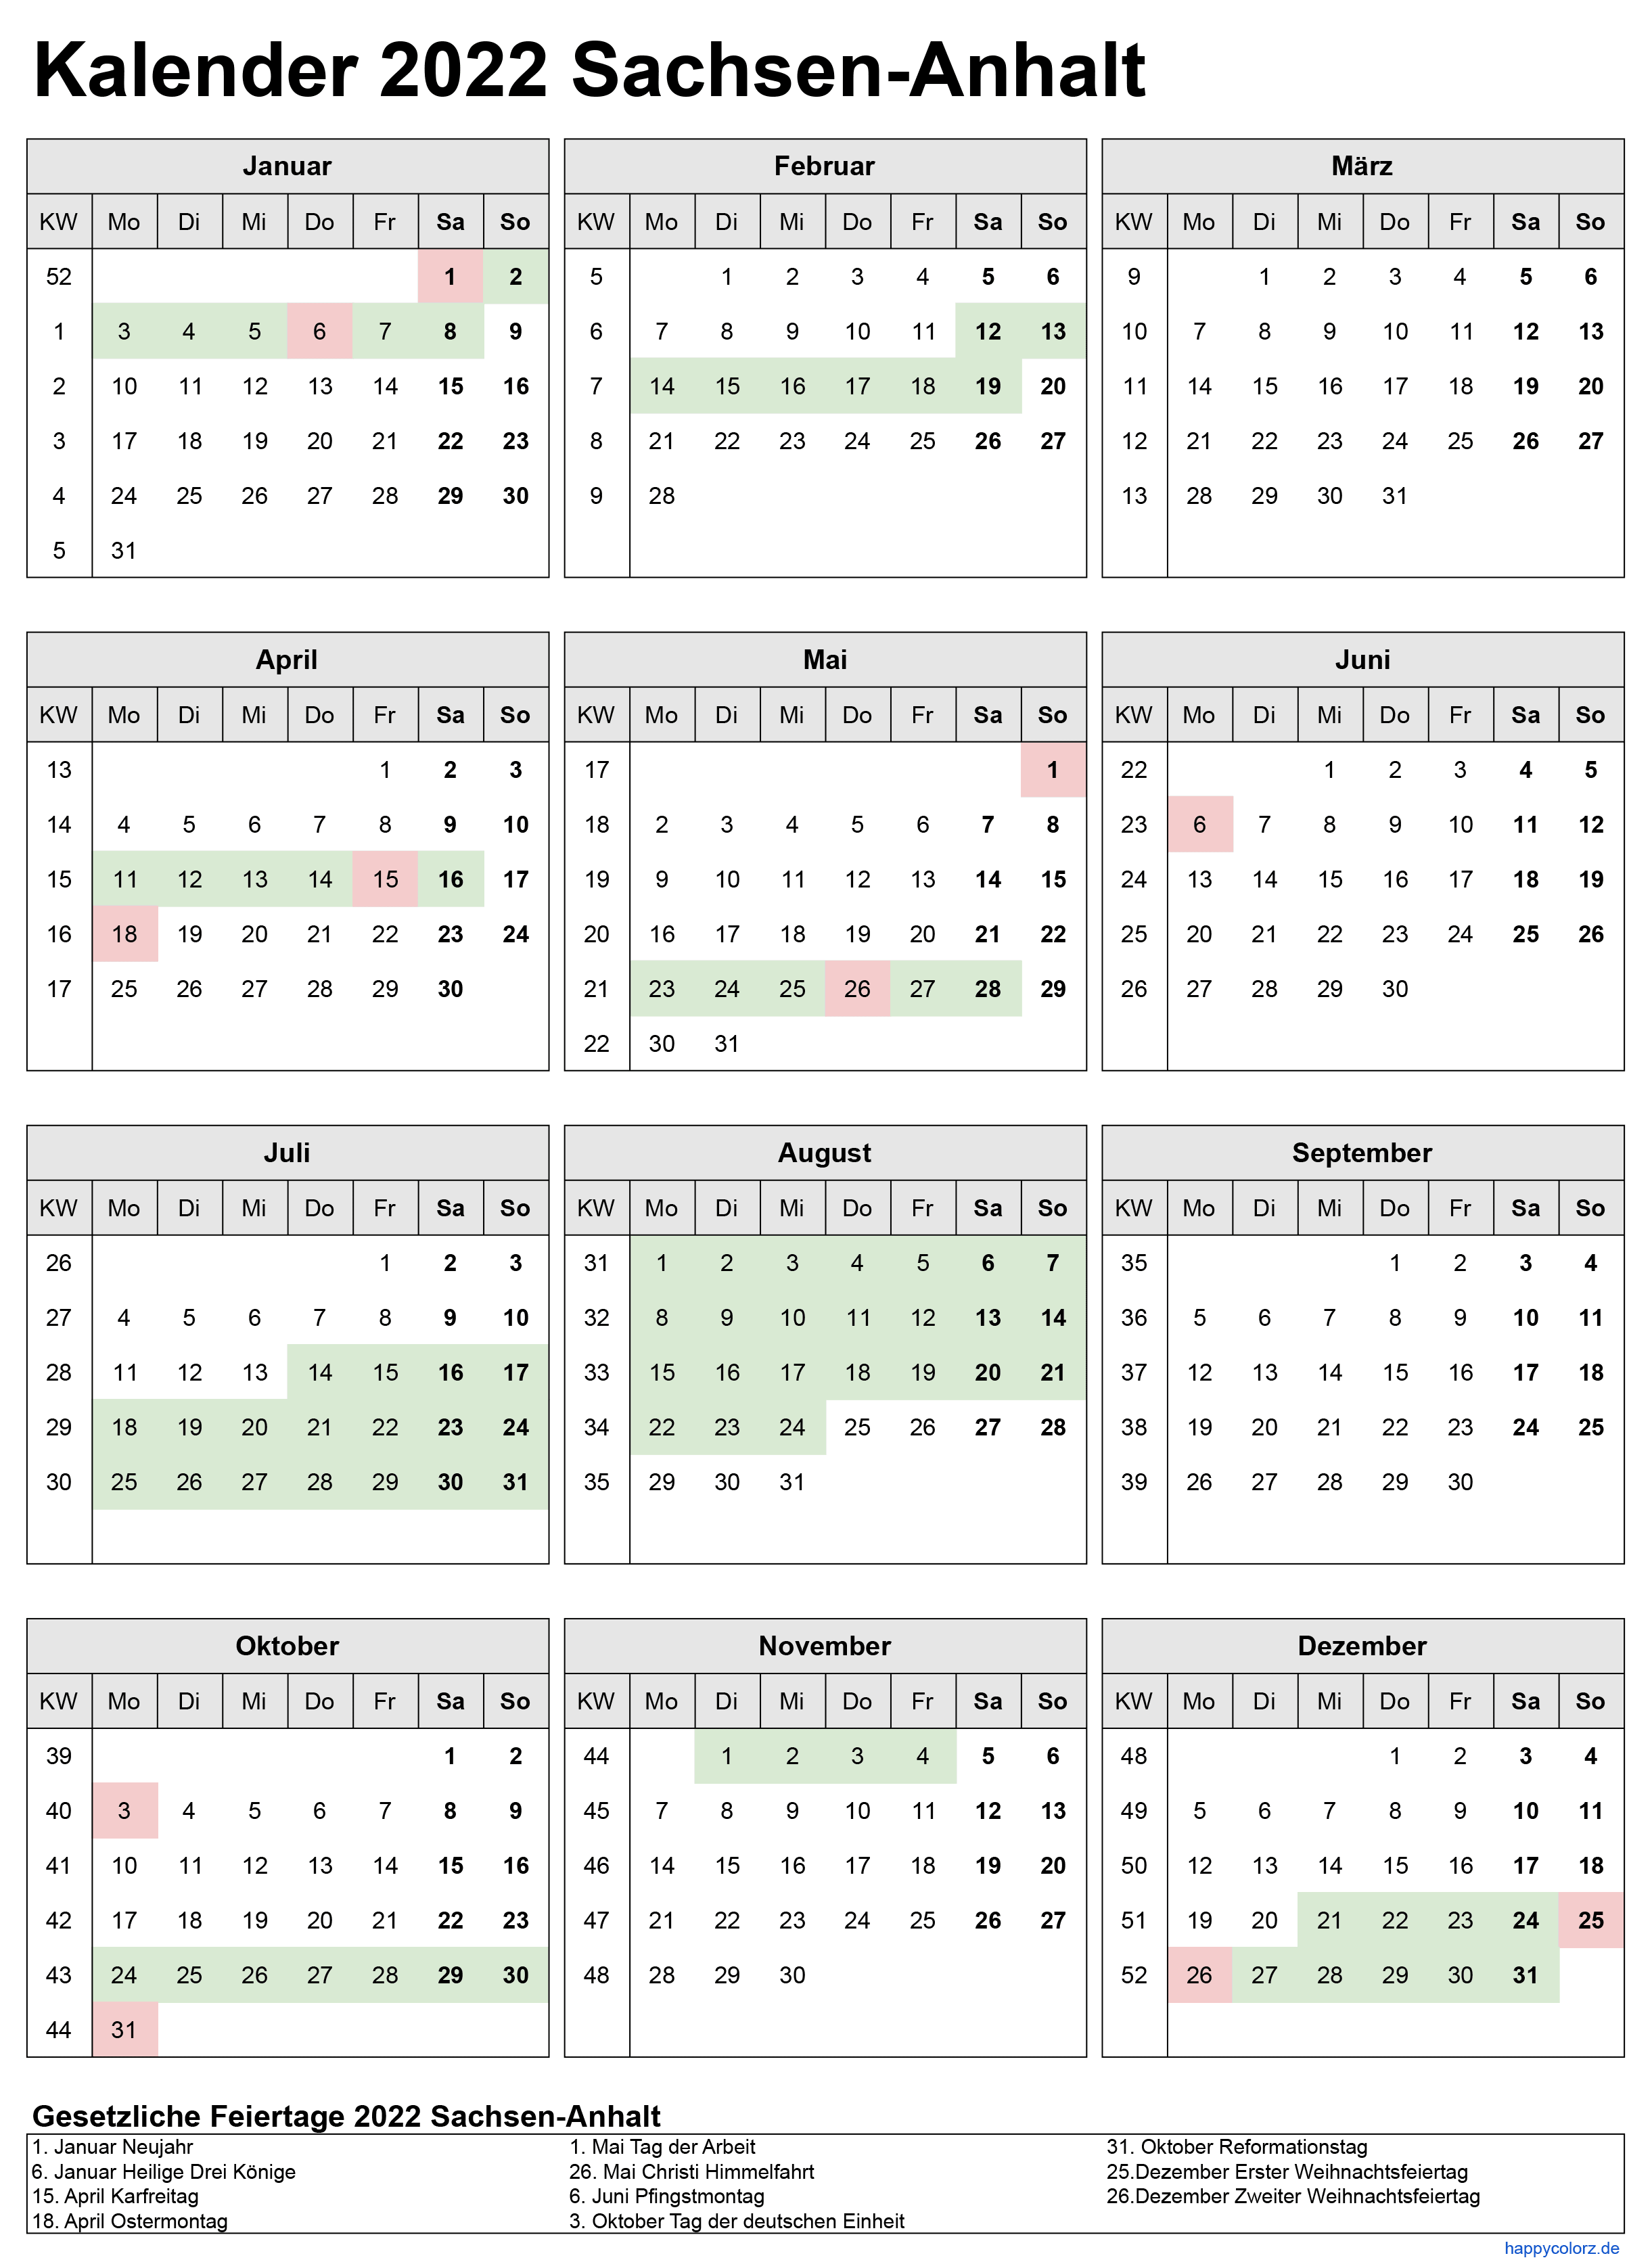 Kalender 2022 Sachsen-Anhalt zum Ausdrucken